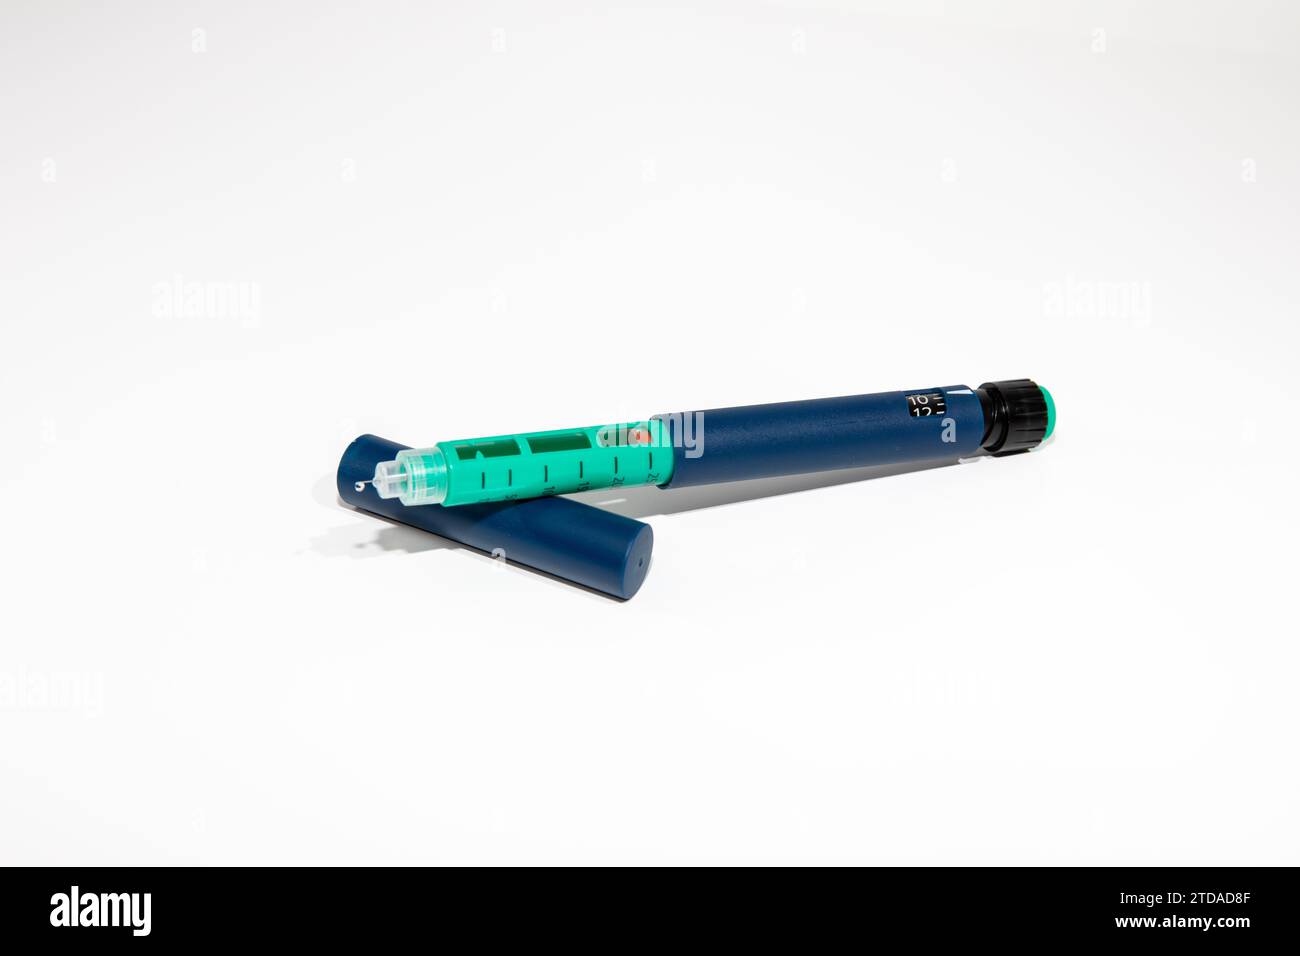 Penna per insulina con punta dell'ago isolata su sfondo bianco. I dispositivi medici sono usati per l'autoiniezione per il trattamento della malattia del diabete. Foto Stock